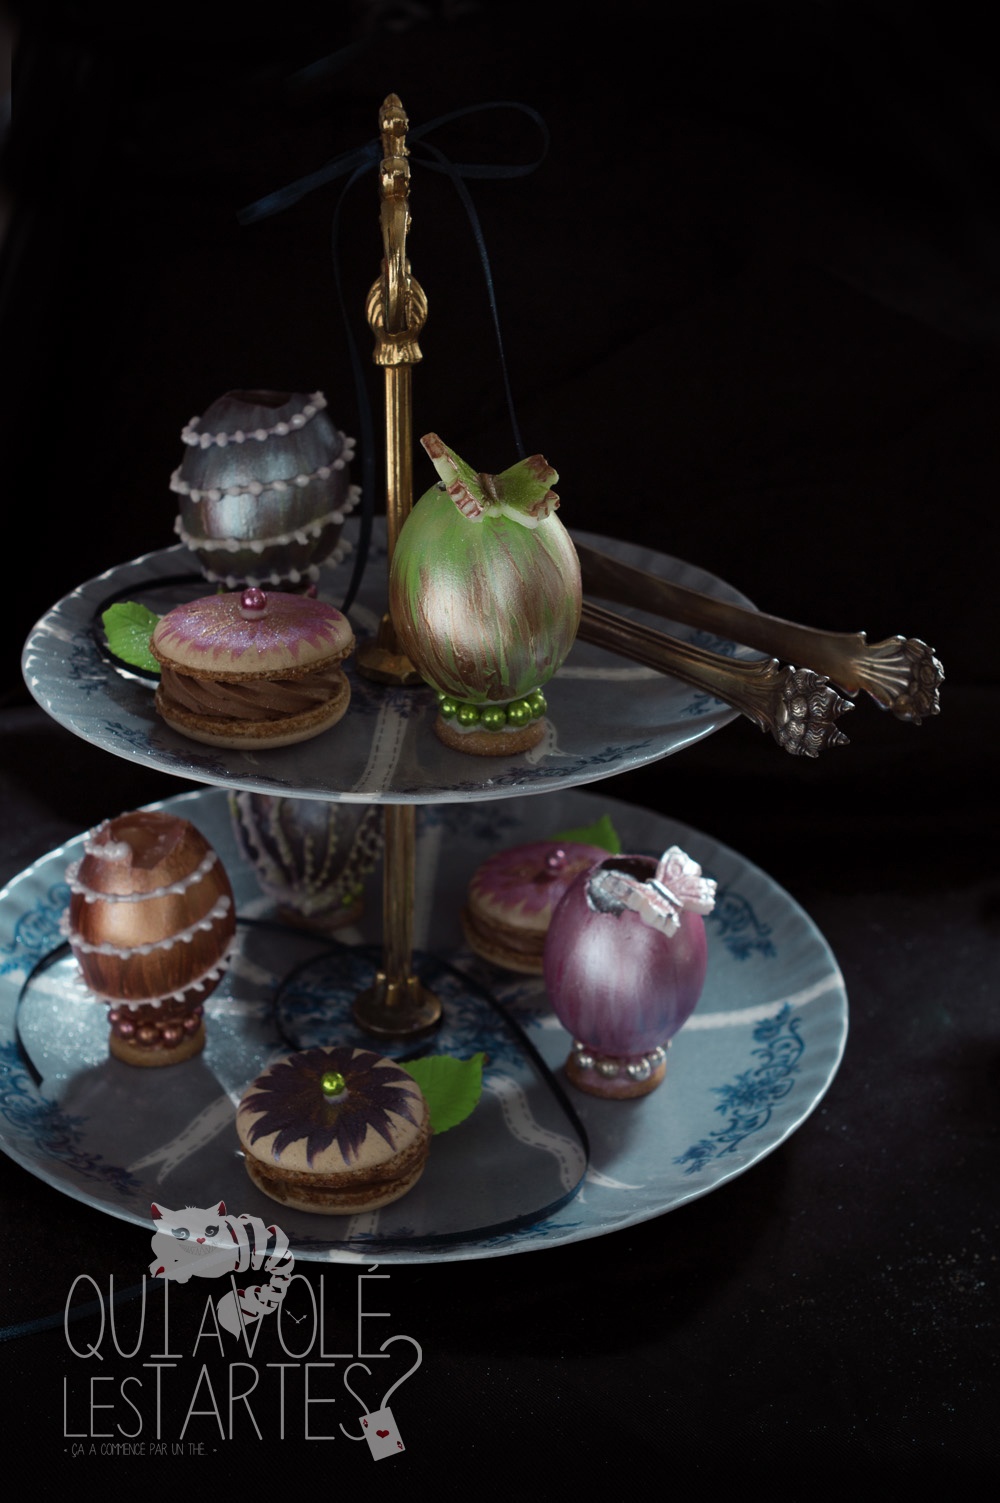 Oeufs façon Fabergé 4 - Studio 2 création - Qui a volé les tartes